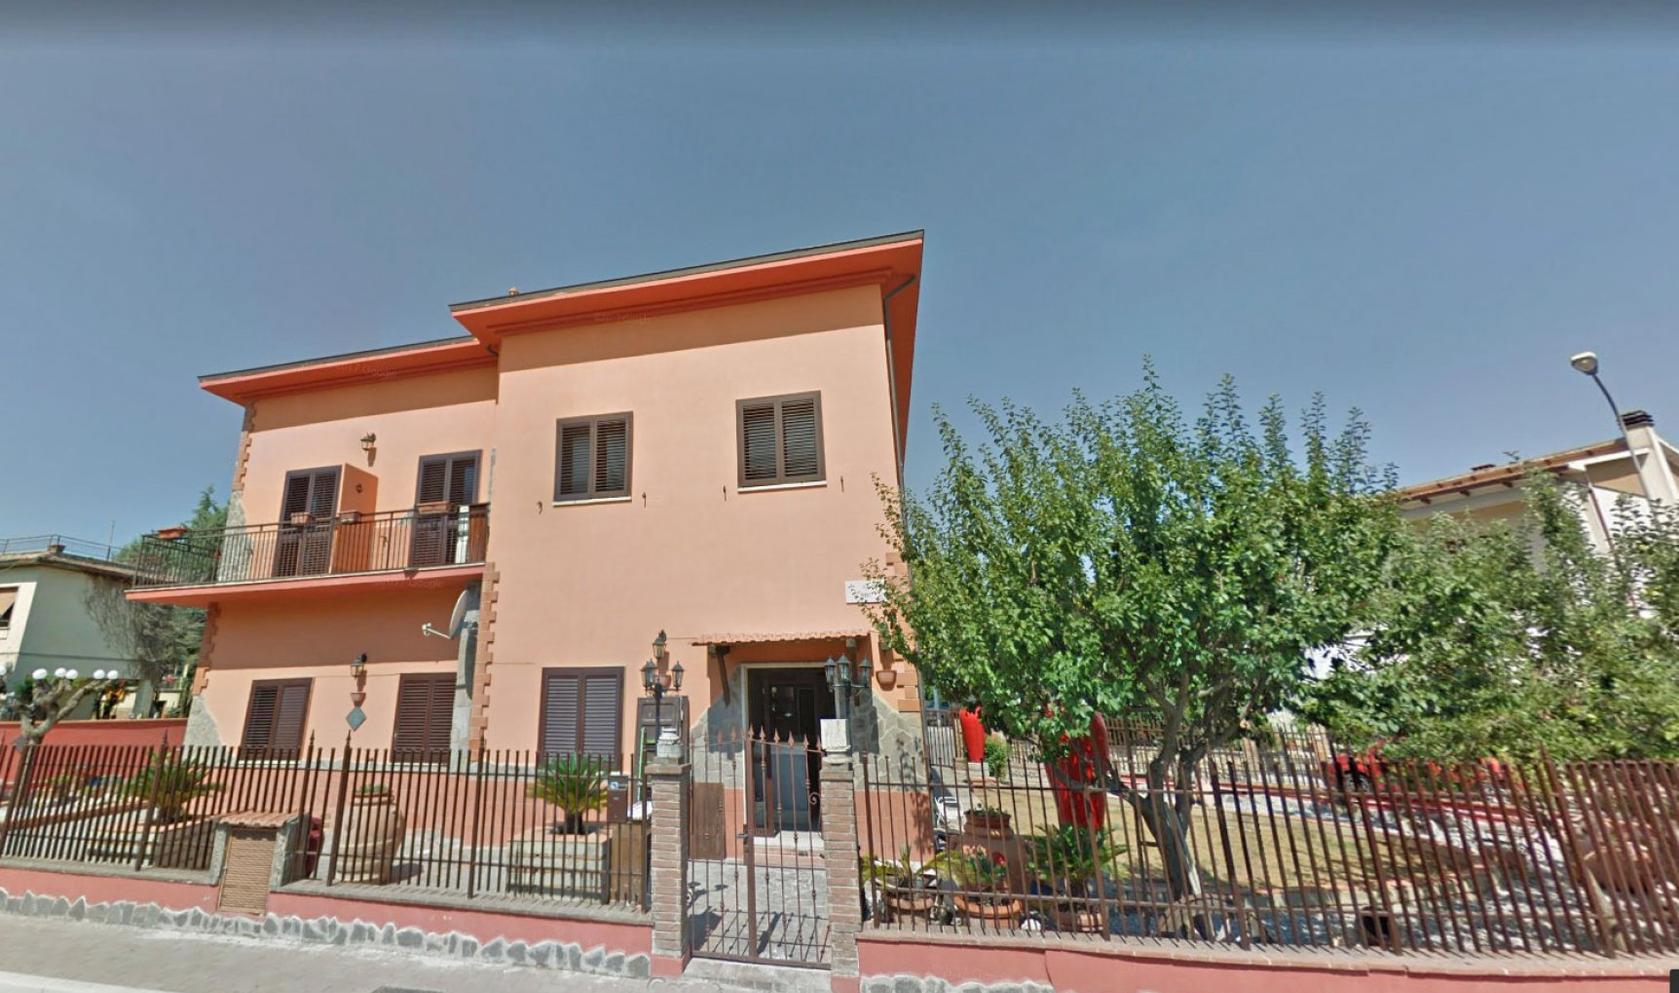 Toscana Immobiliare - Casa vacanza in vendita in provincia di Siena